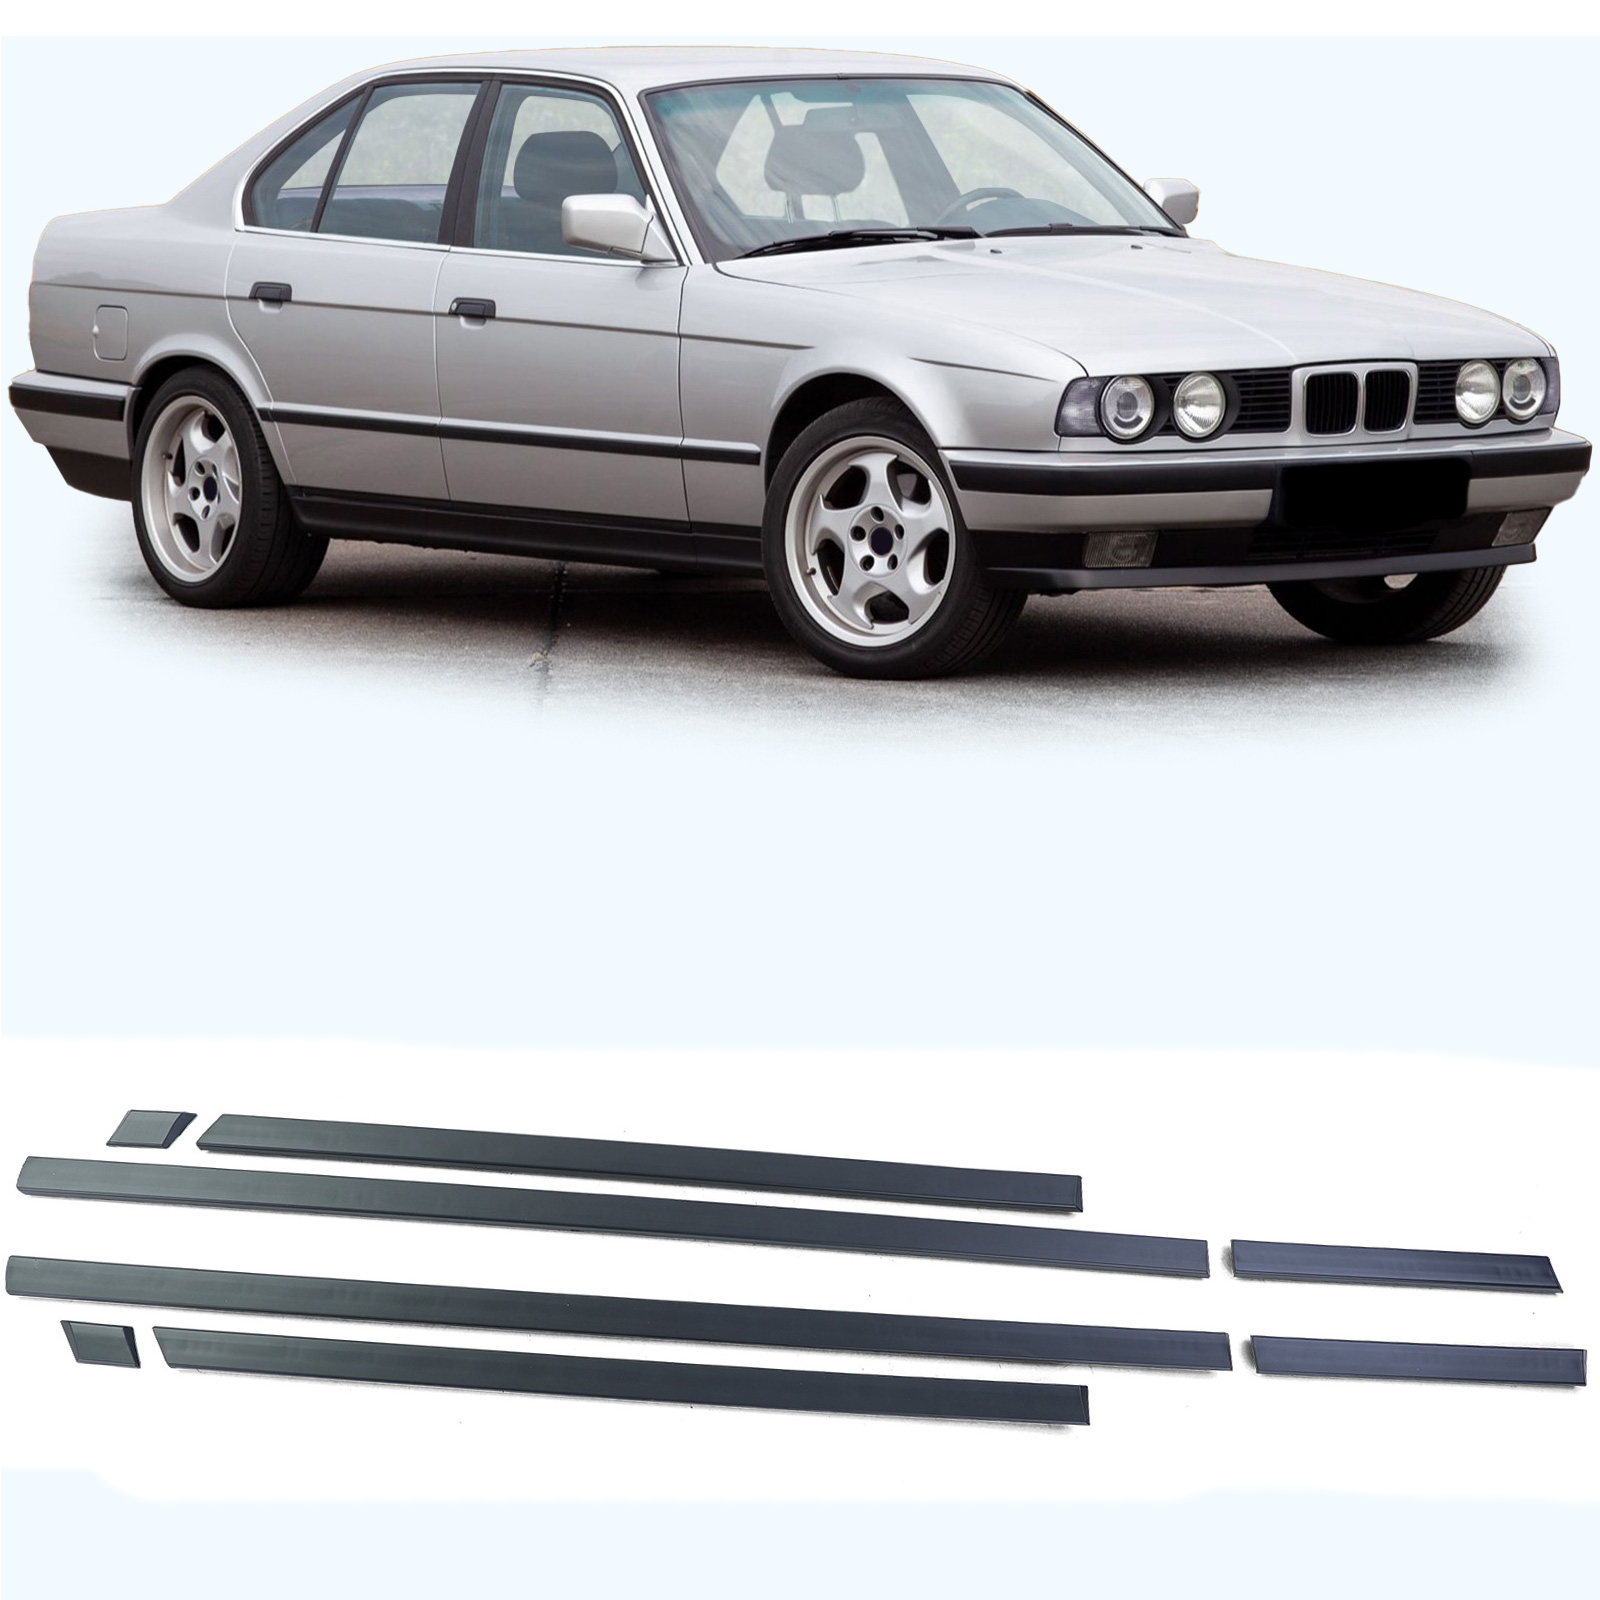 Türleisten Stoßleisten Zierleisten Set 8 teilig passend für BMW 5er E34  88-96